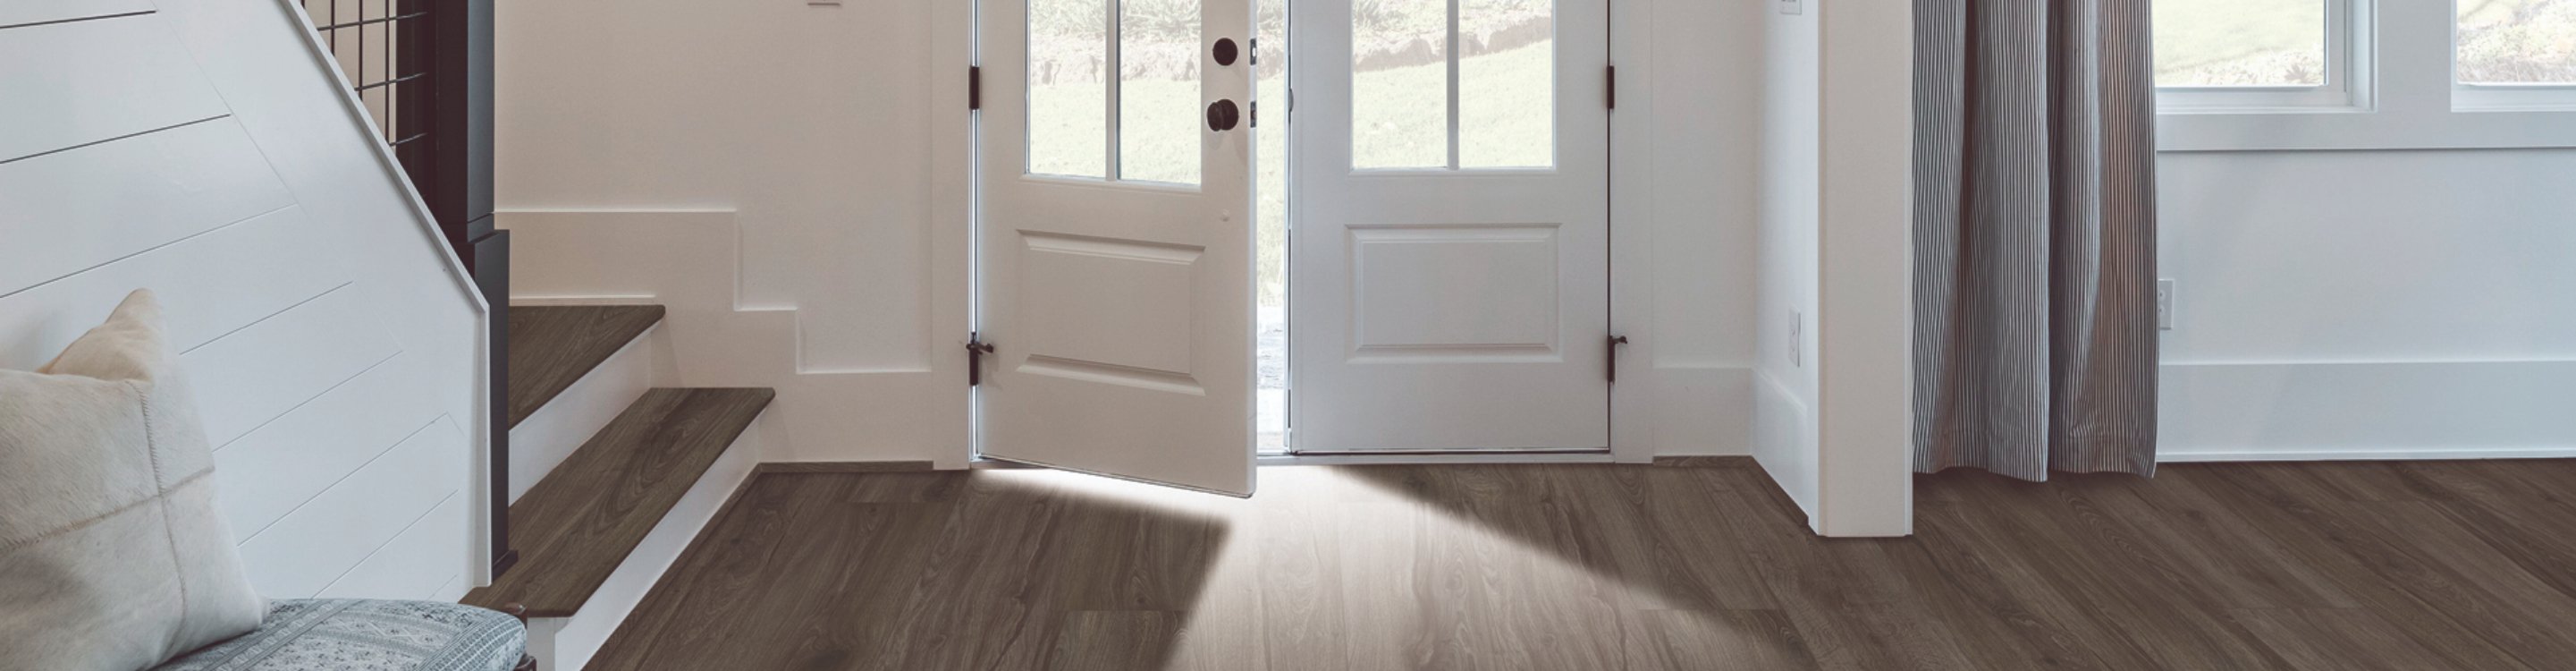 Wood-look luxury vinyl flooring in an entryway